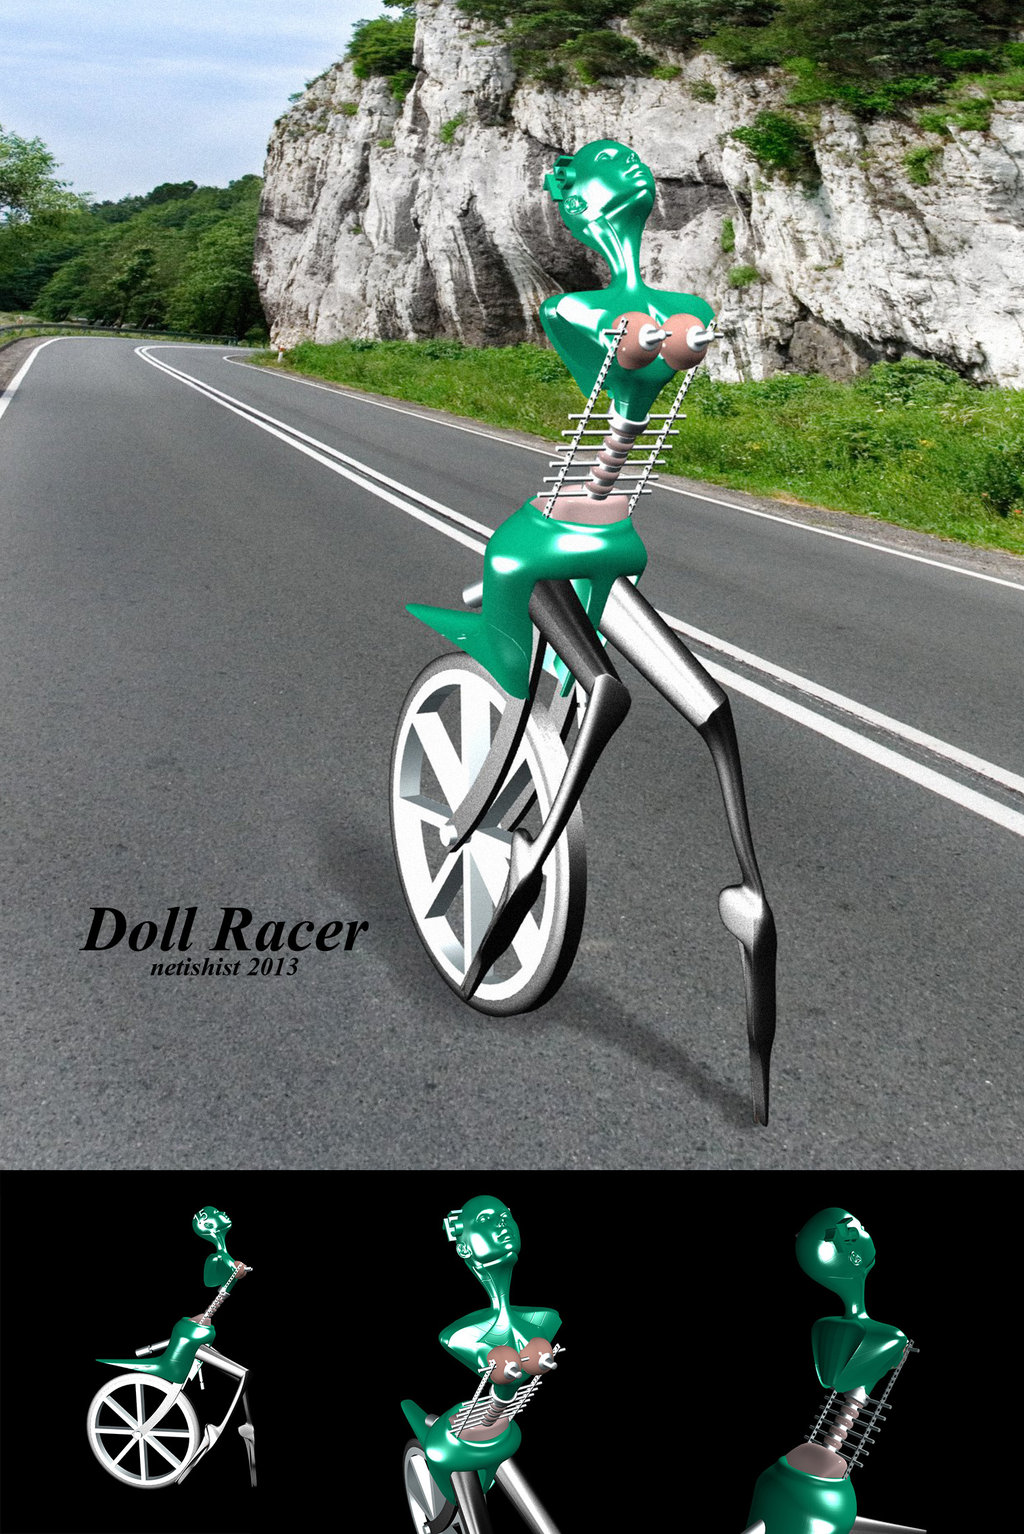 doll_racer_by_netishist-d5q2qbn